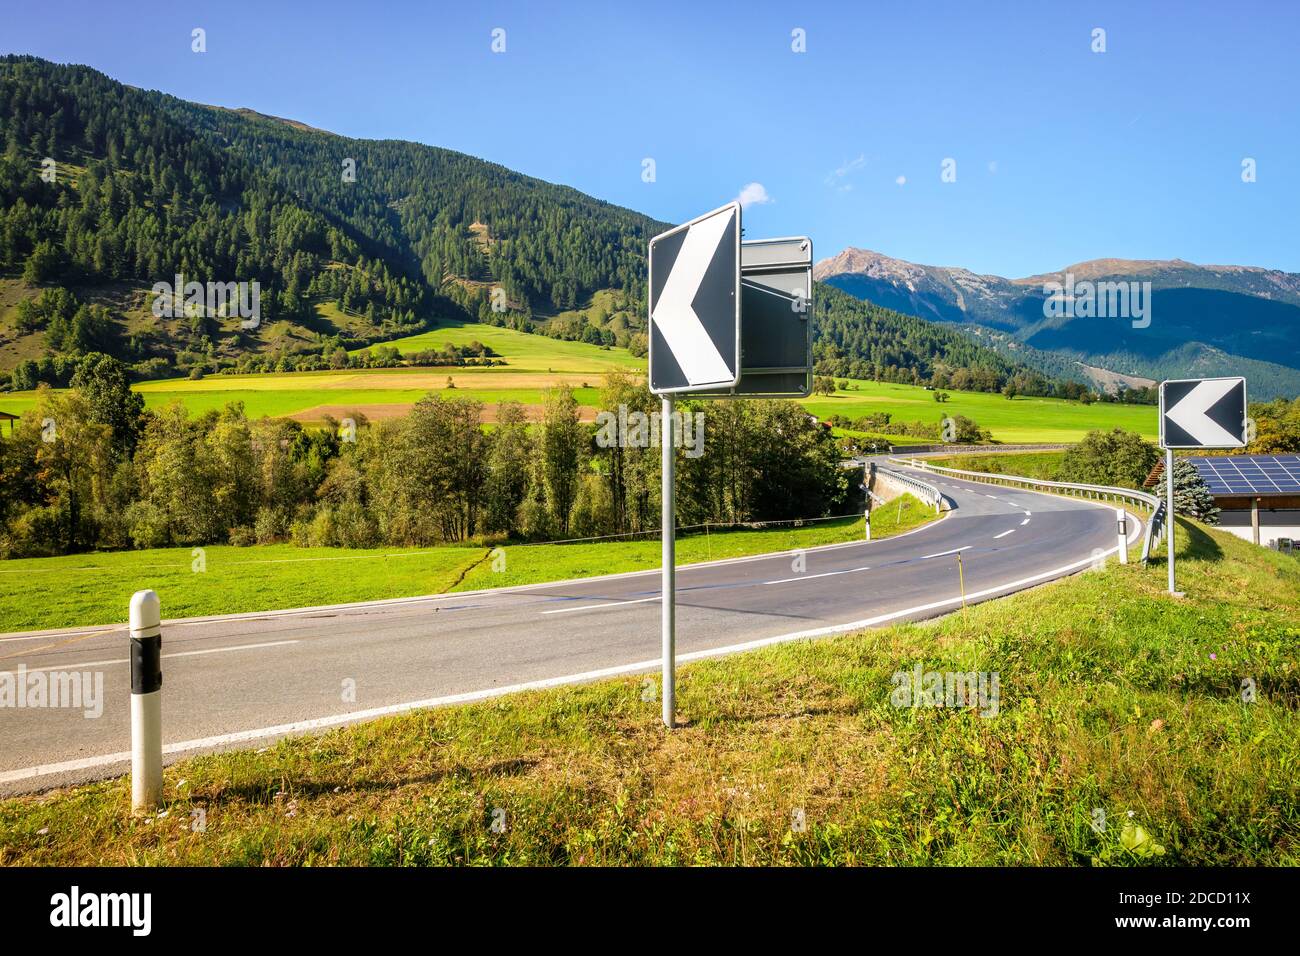 Des panneaux indiquent un virage au niveau d'un pont au-dessus de la rivière ROM dans le Val Müstair Suisse. La route mène au village de Müstair, puis à la frontière italienne. Banque D'Images